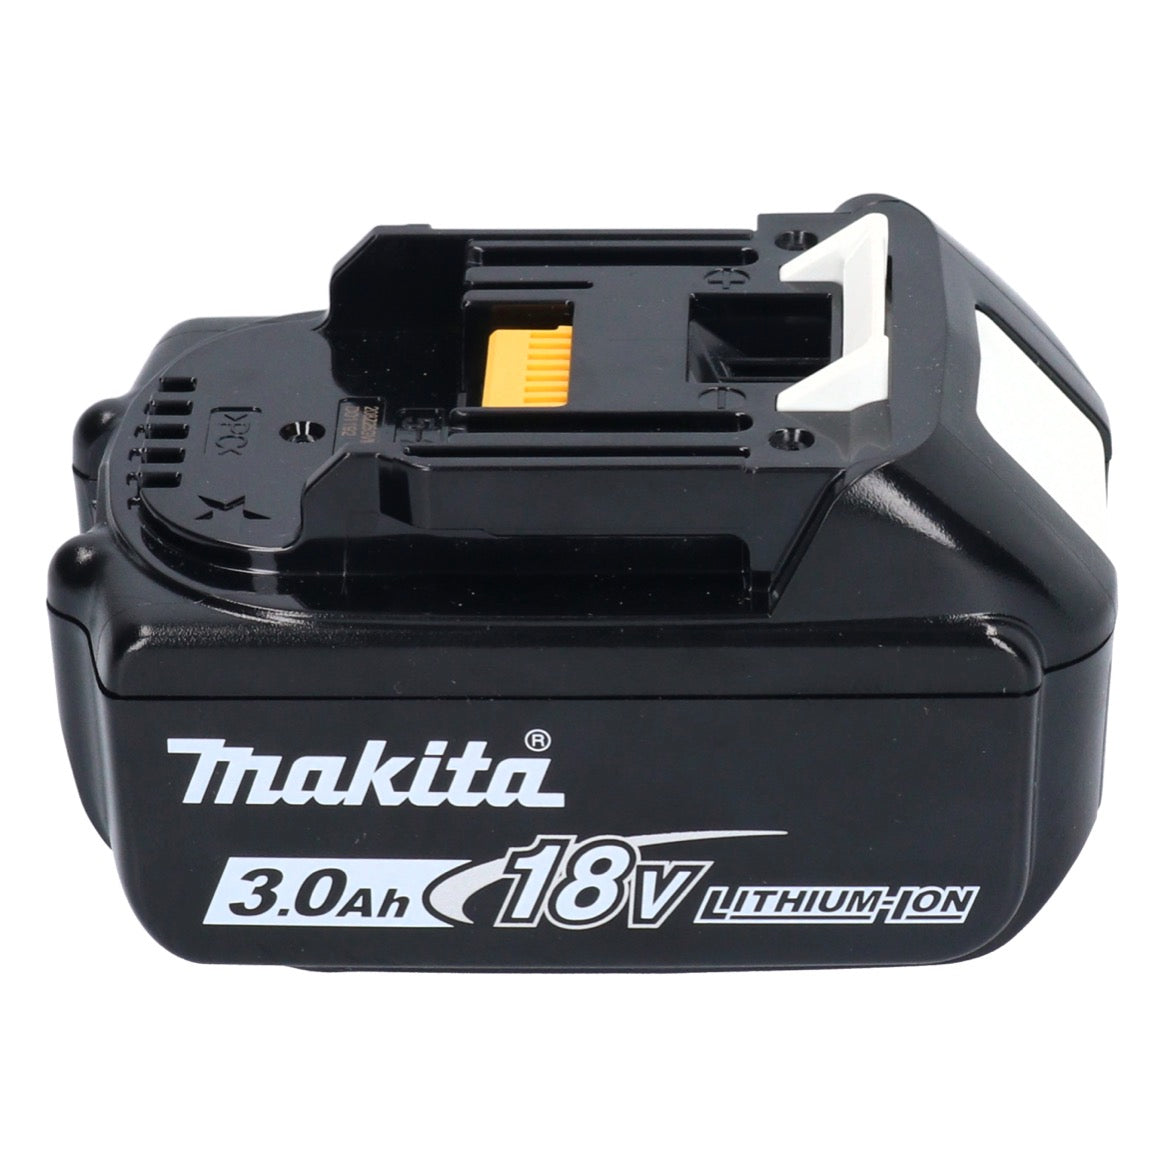 Makita Akku Set 10x BL 1830 B 18 V 3,0 Ah / 3000 mAh Li-Ion ( 10x 197599-5 ) mit LED Anzeige - original, kein Nachbau